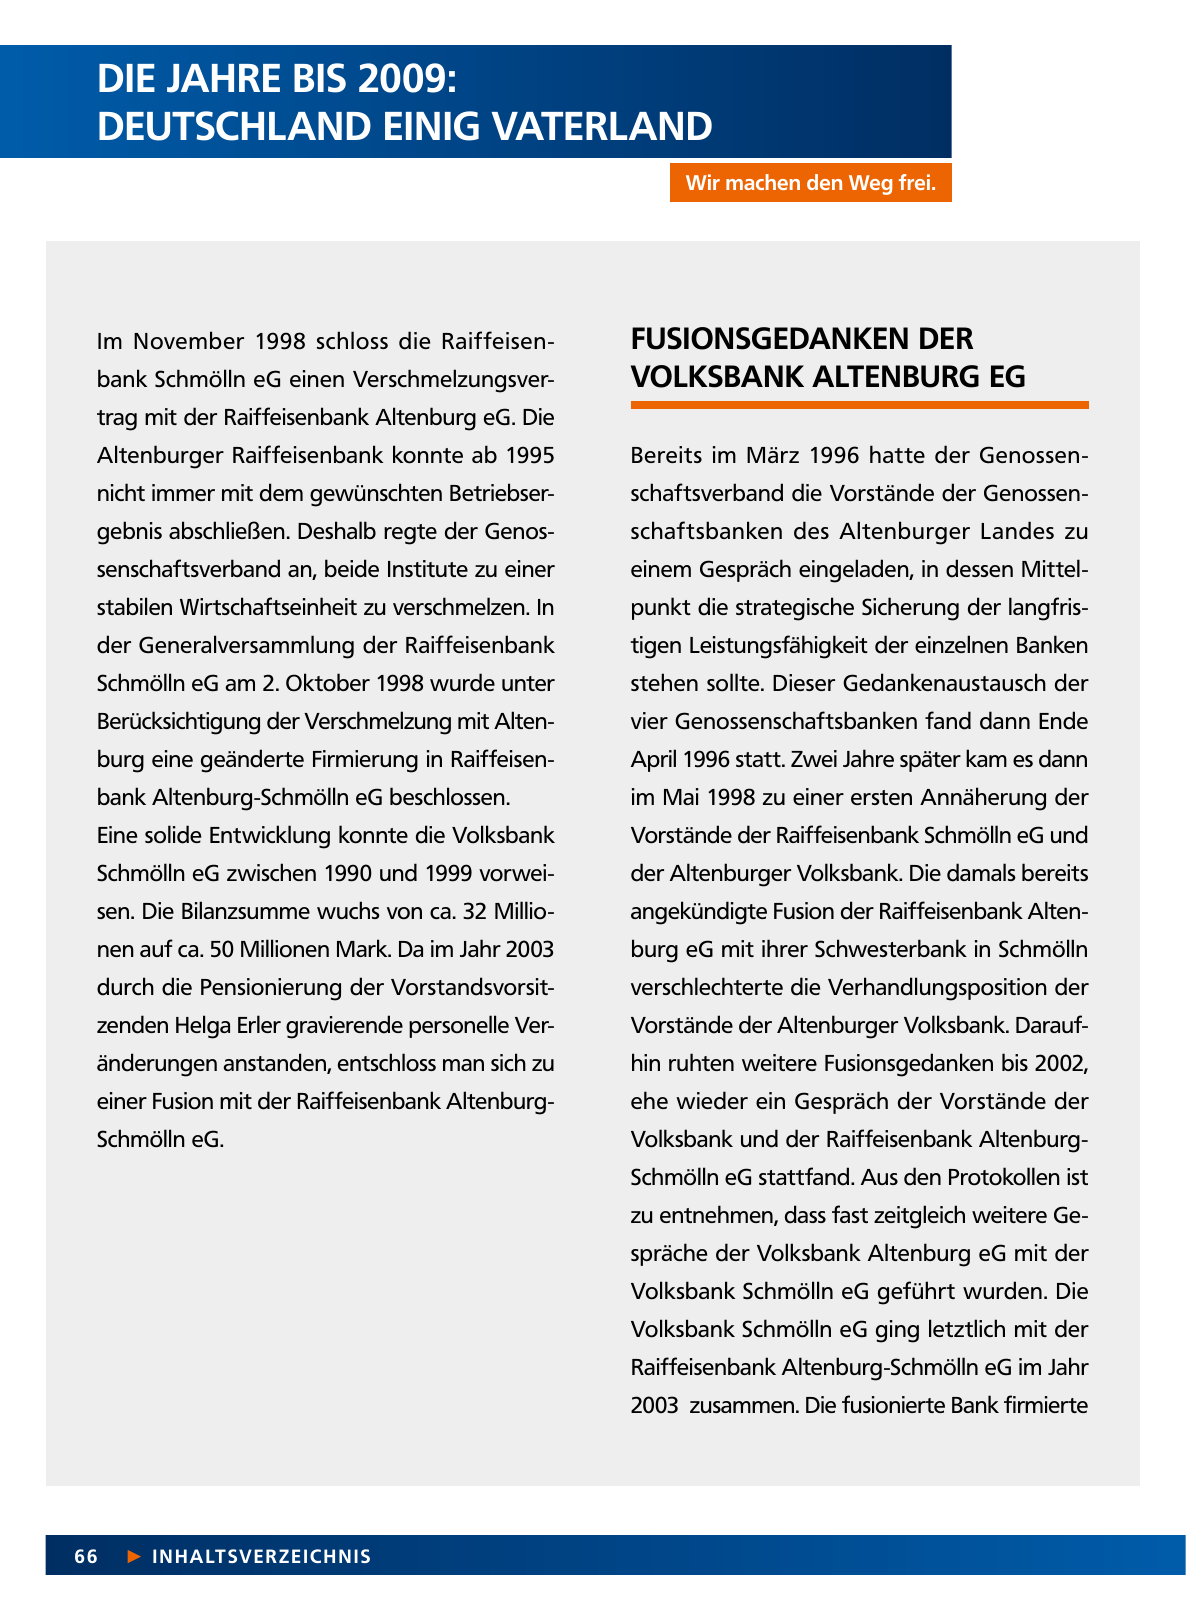 Vorschau Von der Idee, sich selbst zu helfen – 150 Jahre genossenschaftliches Bankwesen im Altenburger Land Seite 66